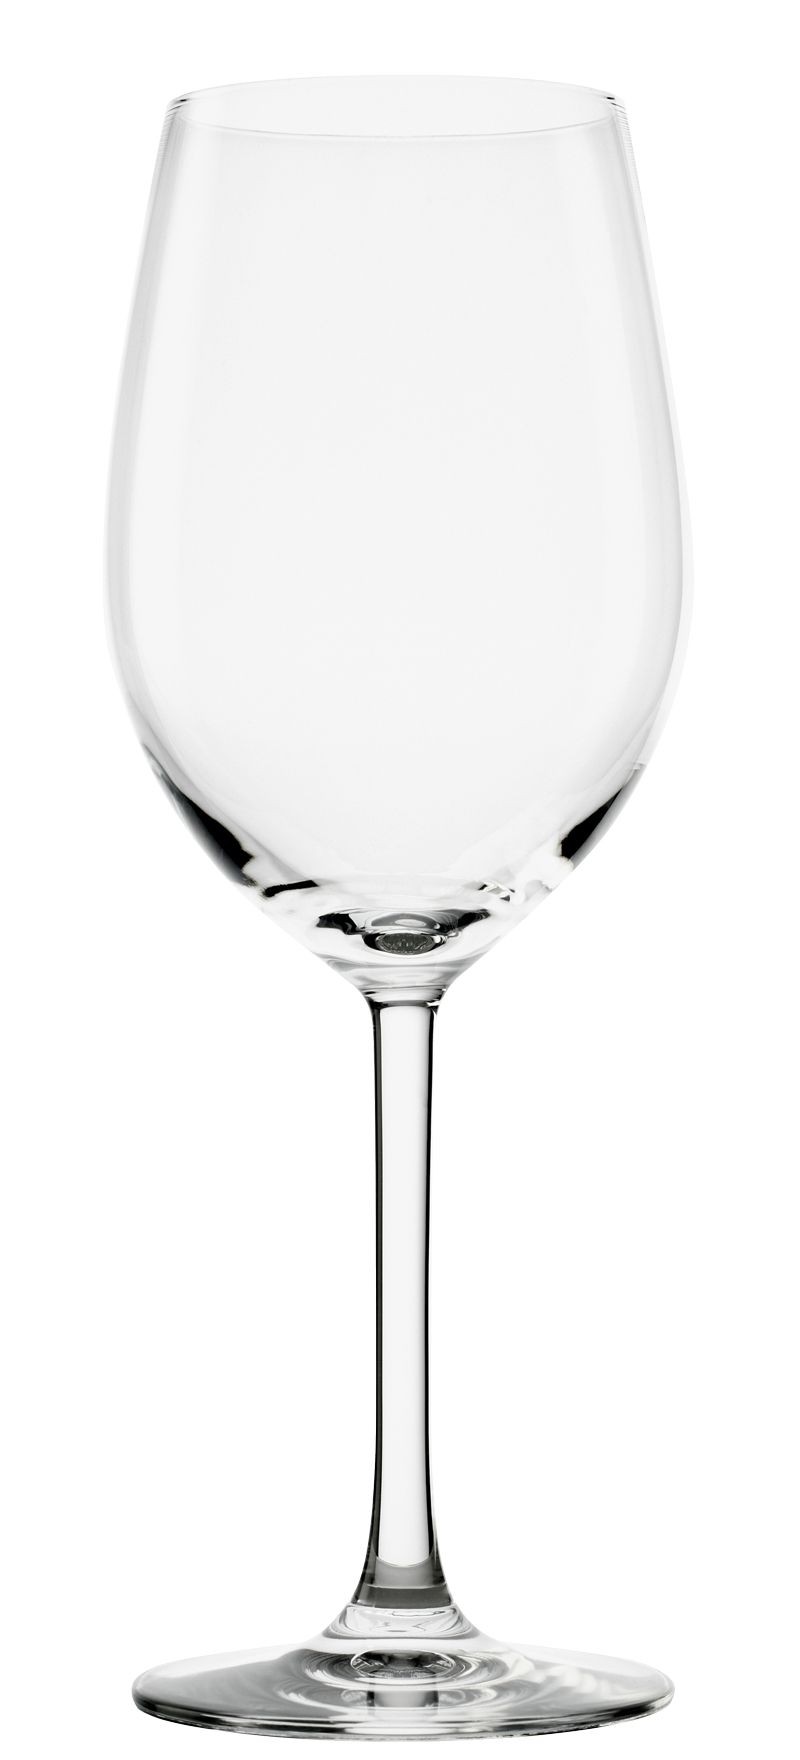 Stolzle Signature Bordeaux Wine Glass 23oz / 652ml 